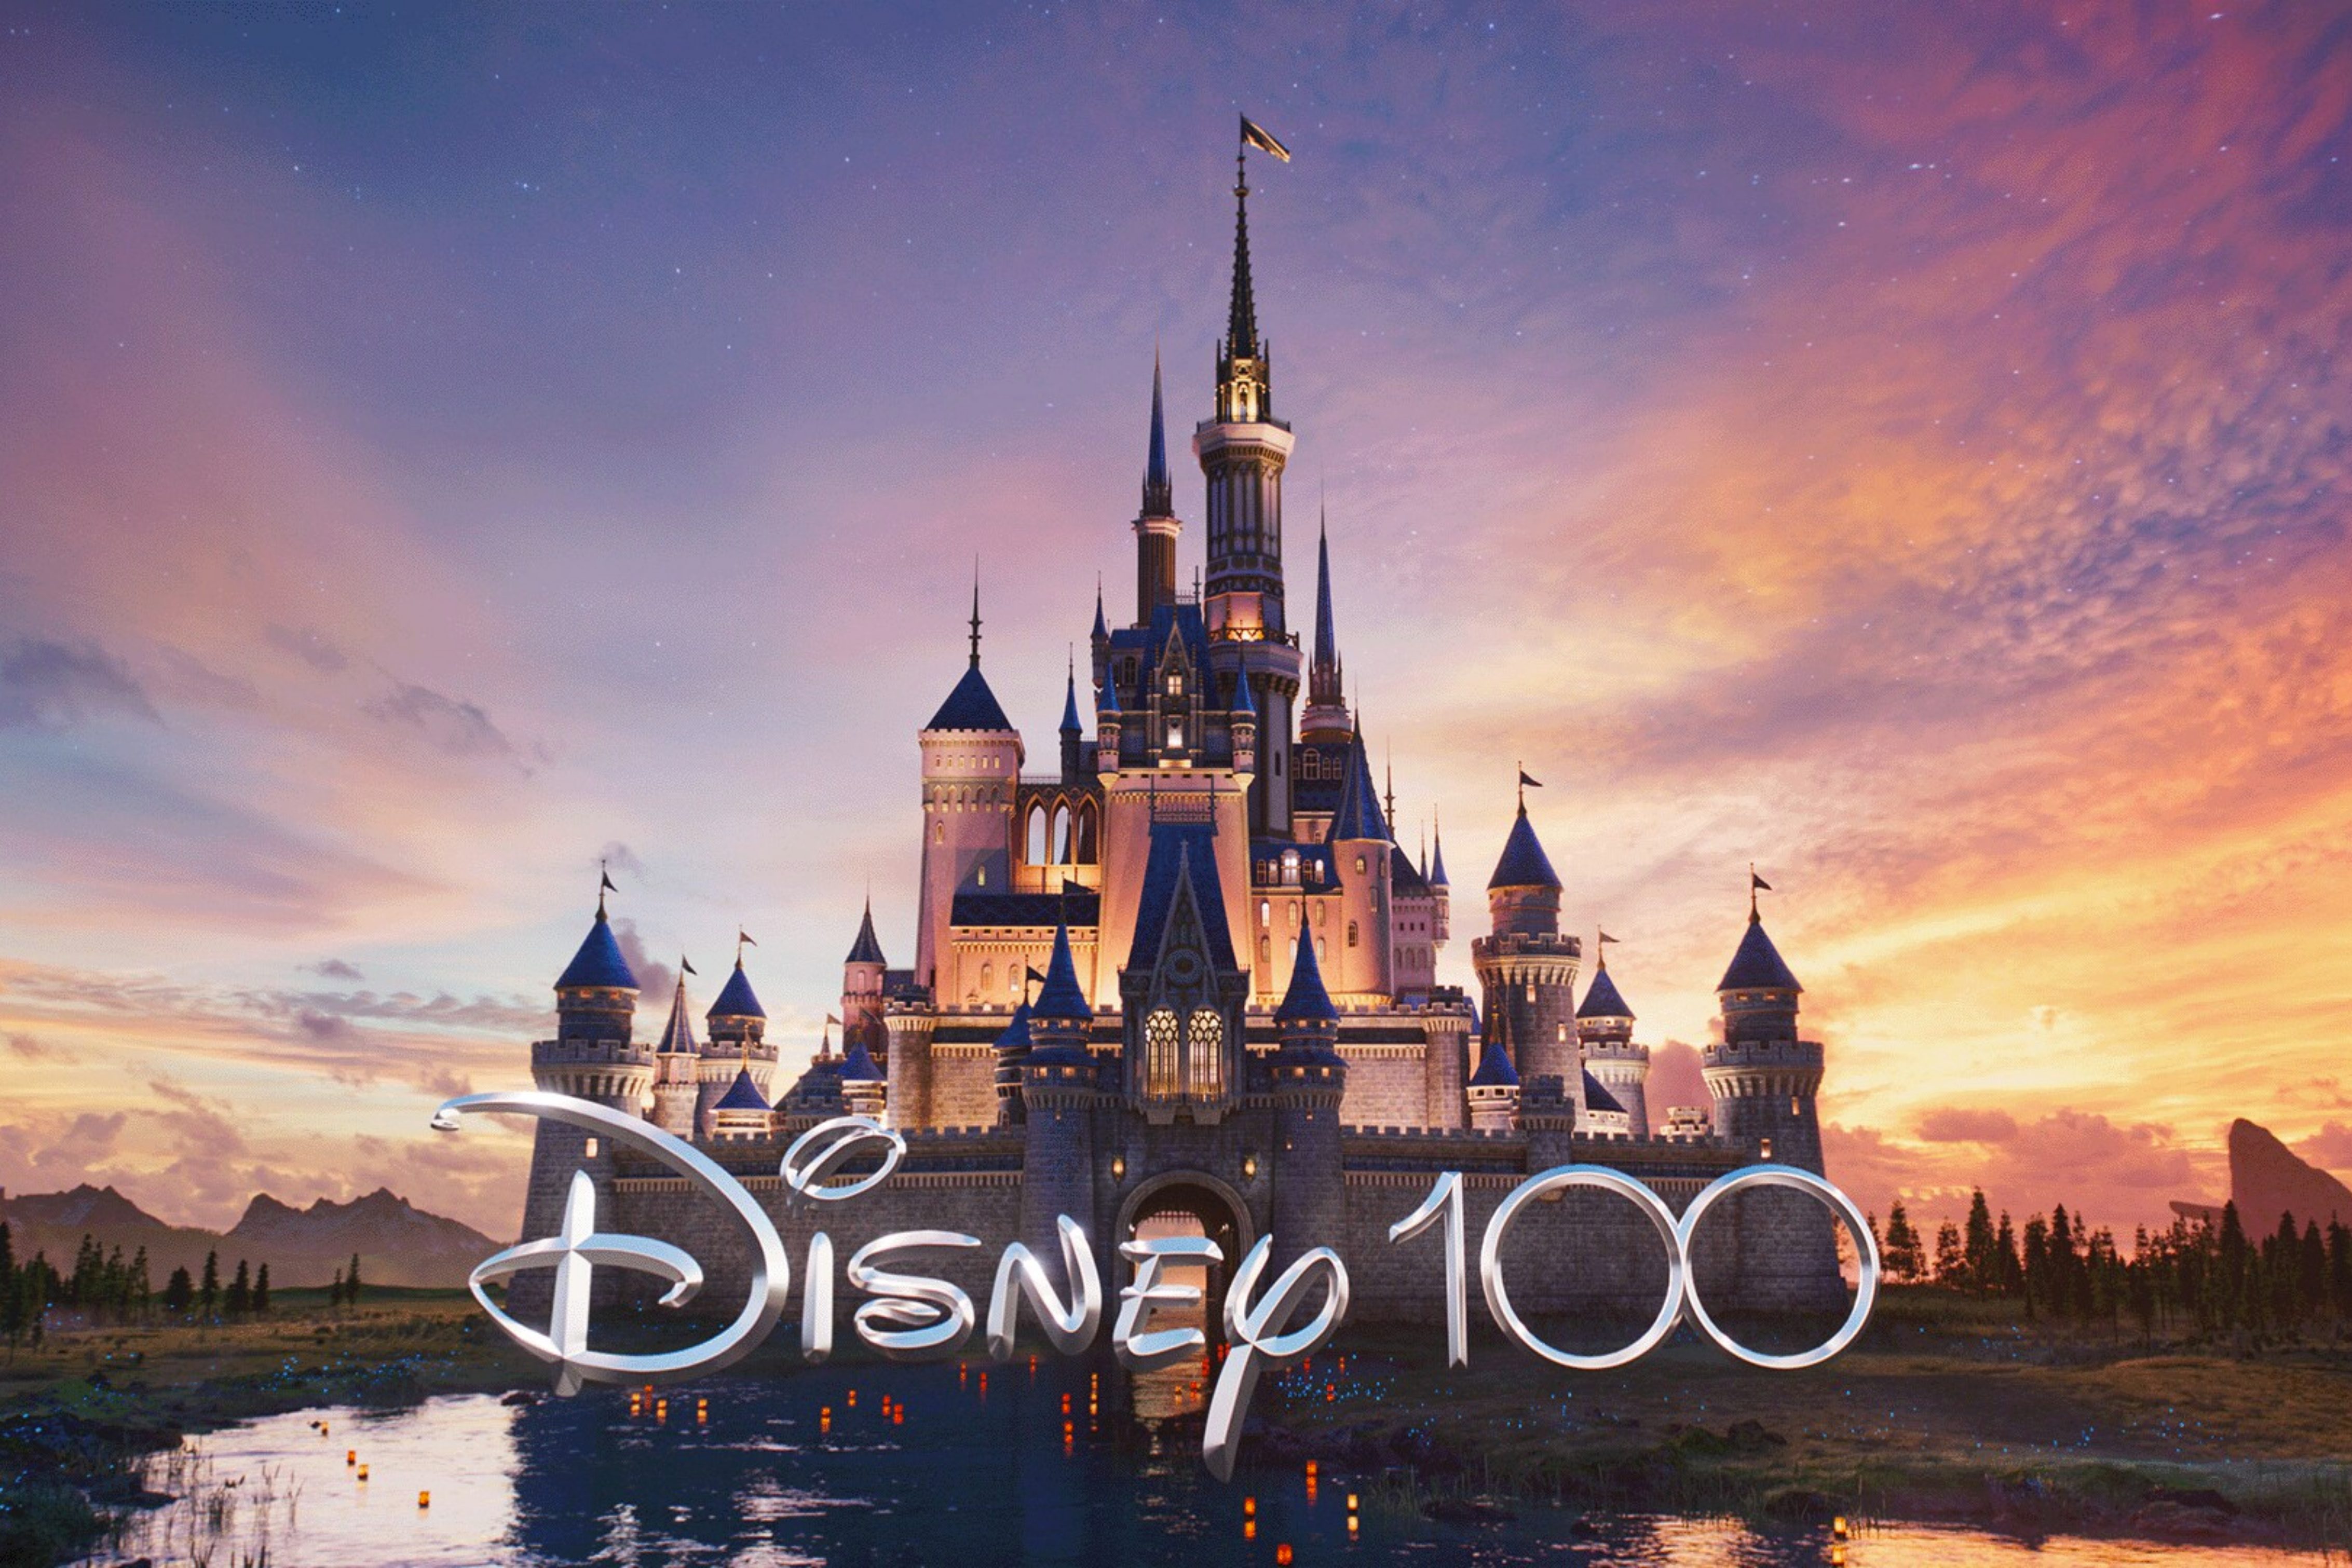 Disney cumple 100 años